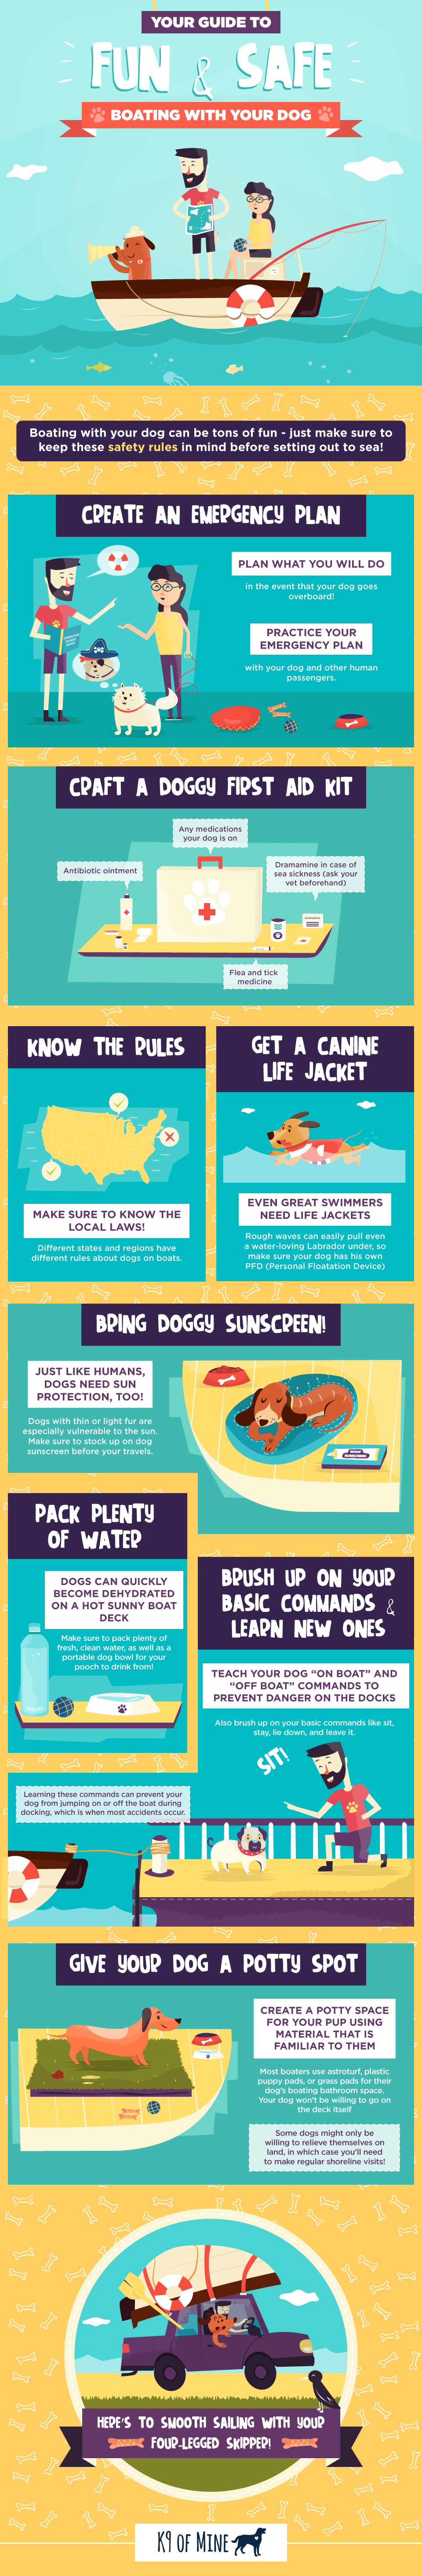 Šunų valčių saugos patarimai: ką žinoti prieš išplaukiant į jūrą [infografika]